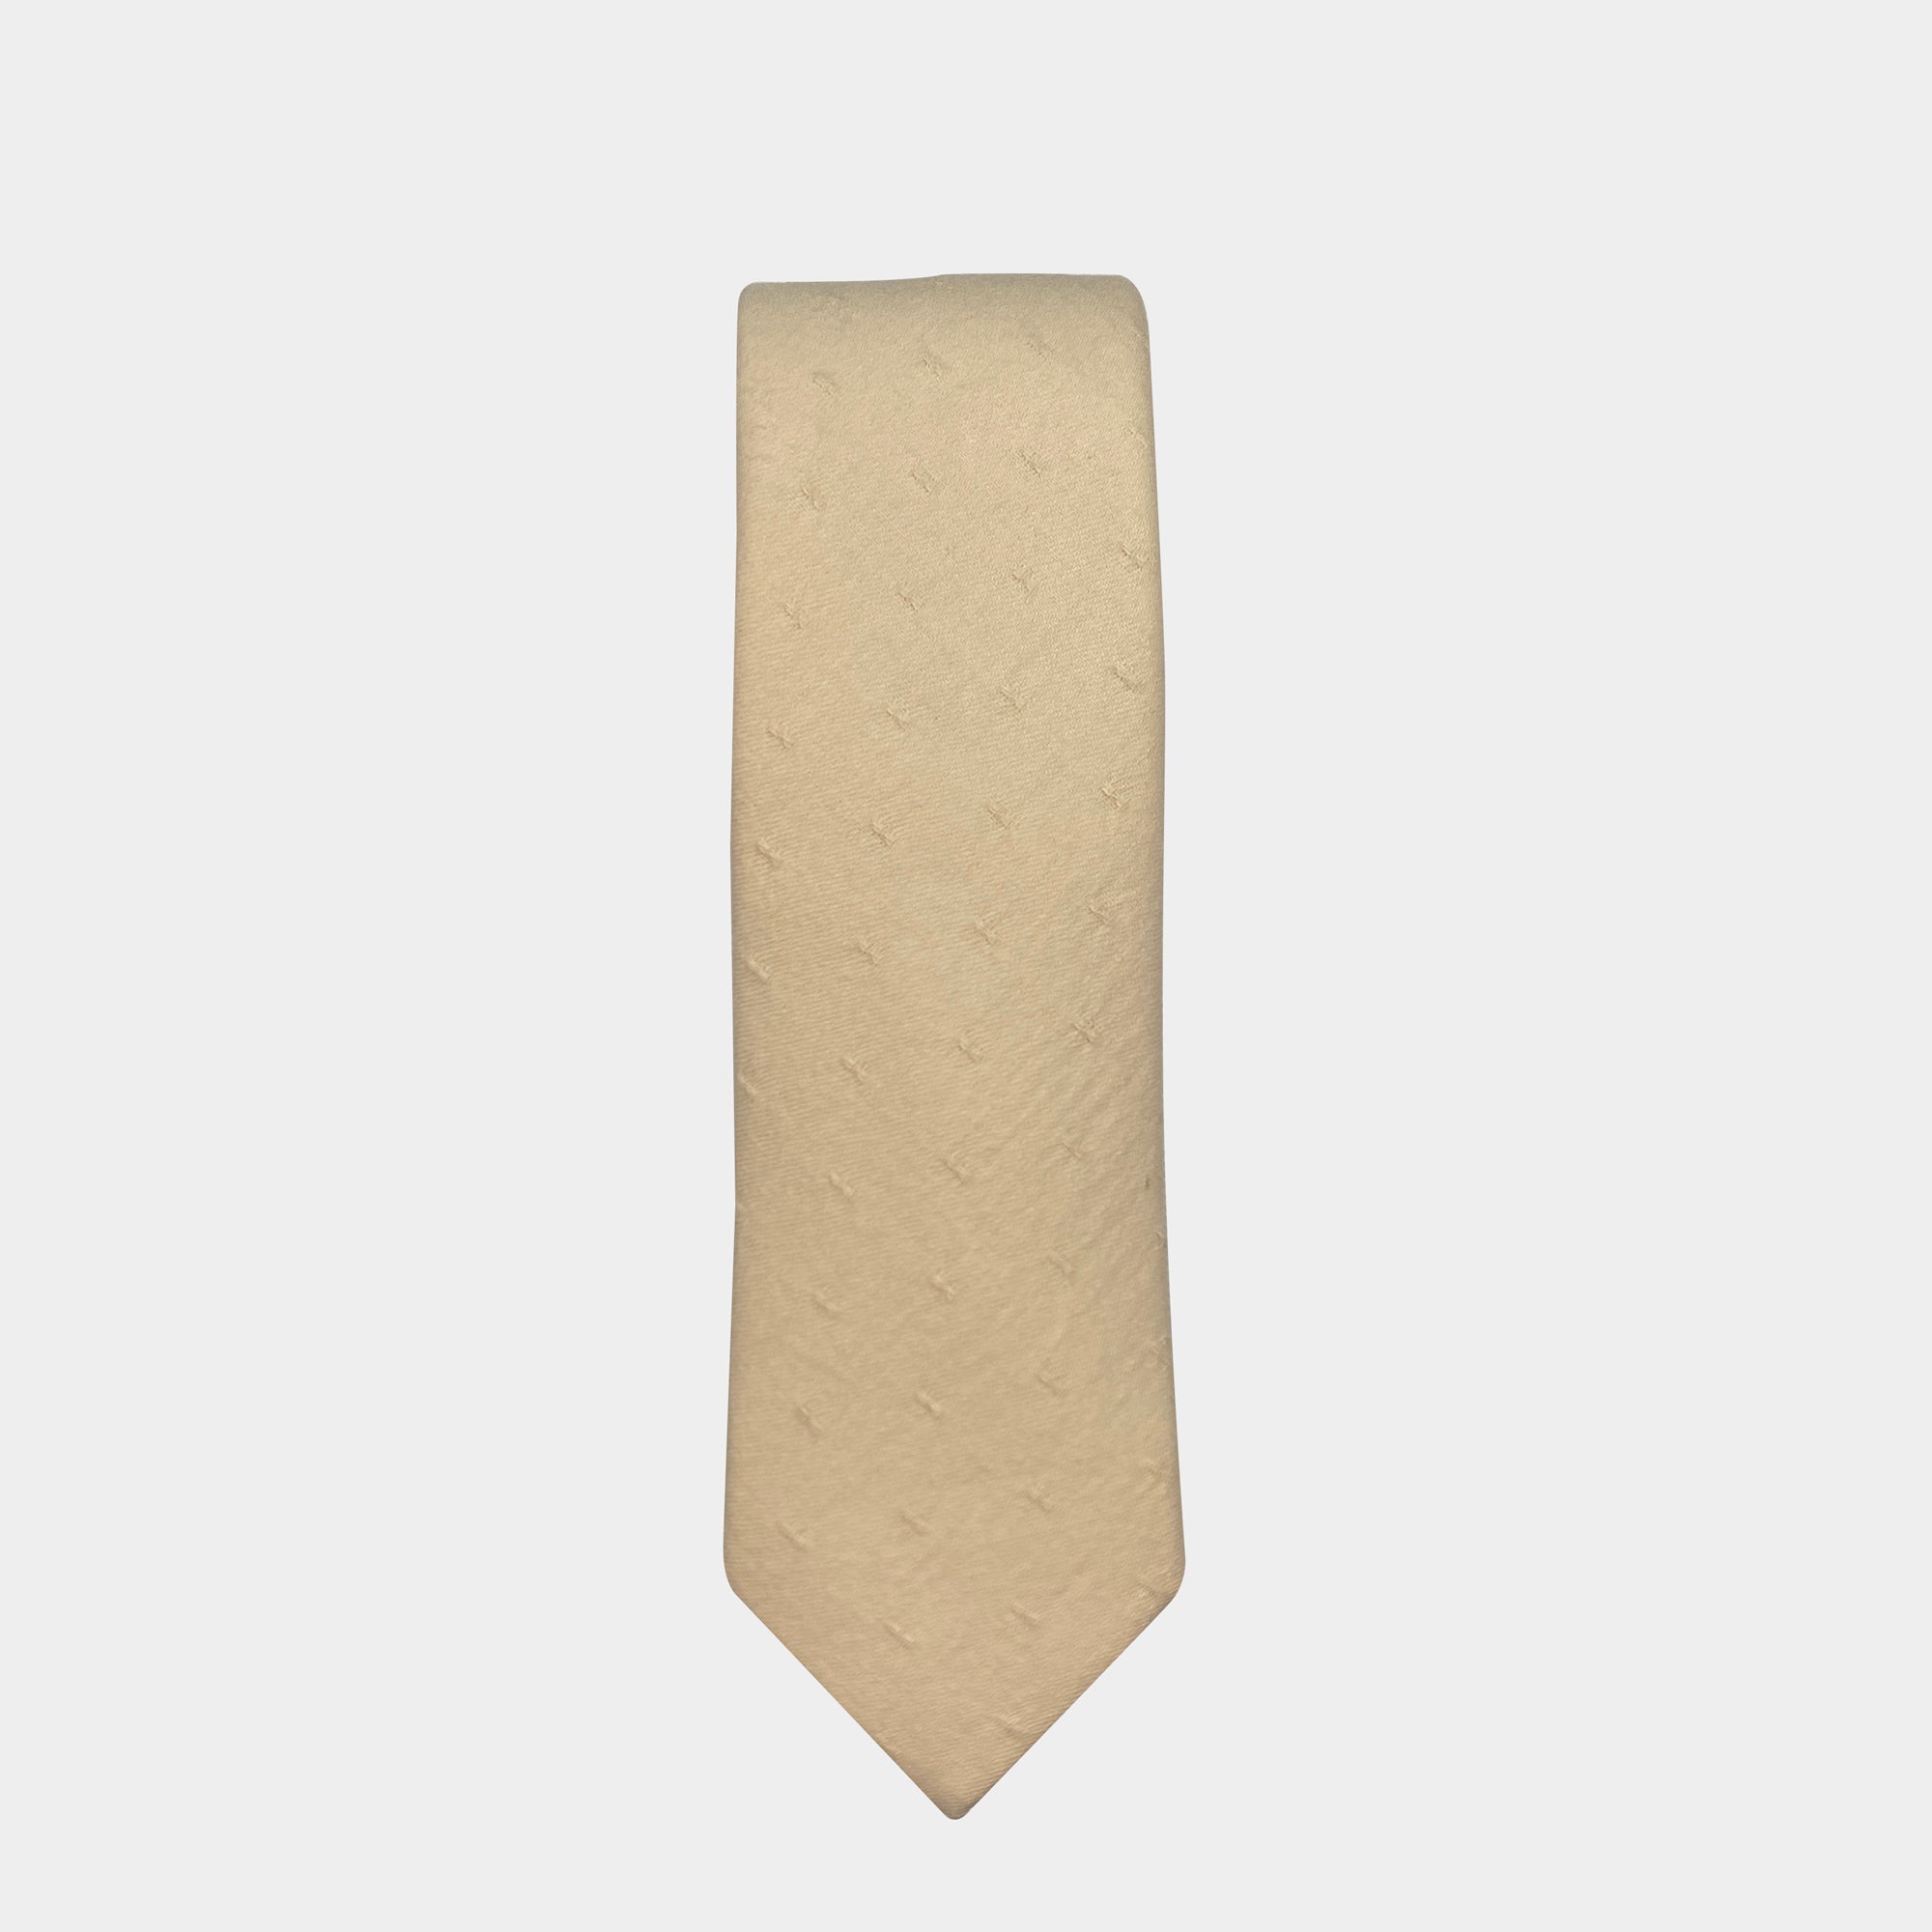 ZURICH - Men's Tie